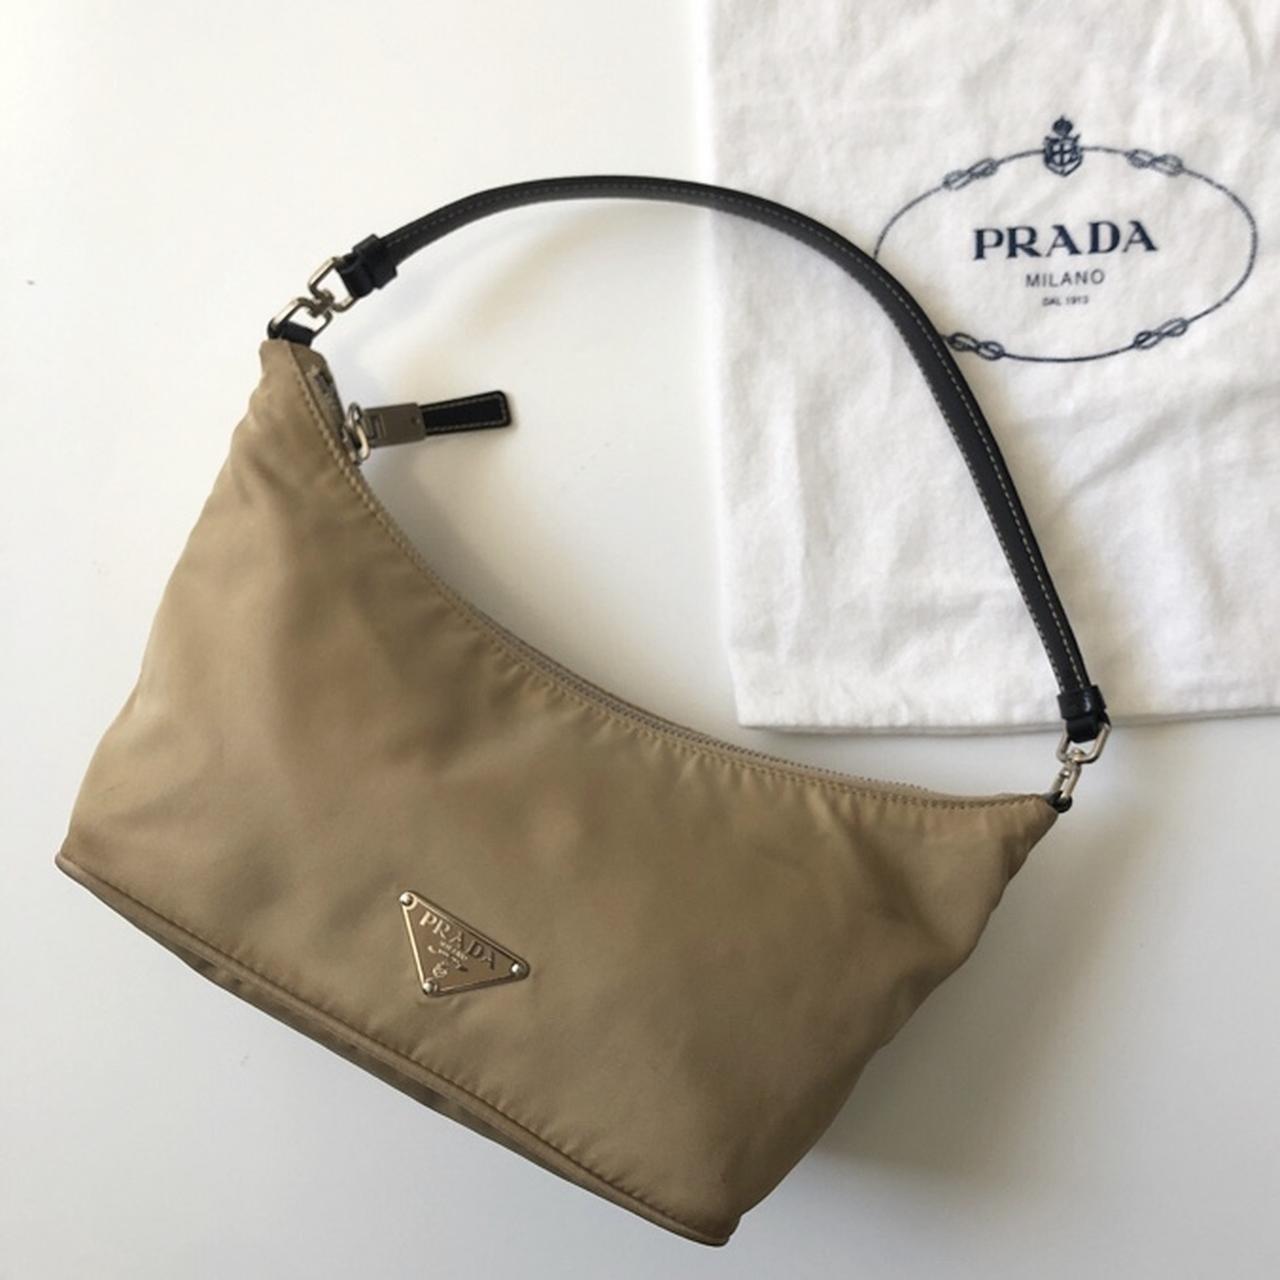 Are Prada Bags trendy?